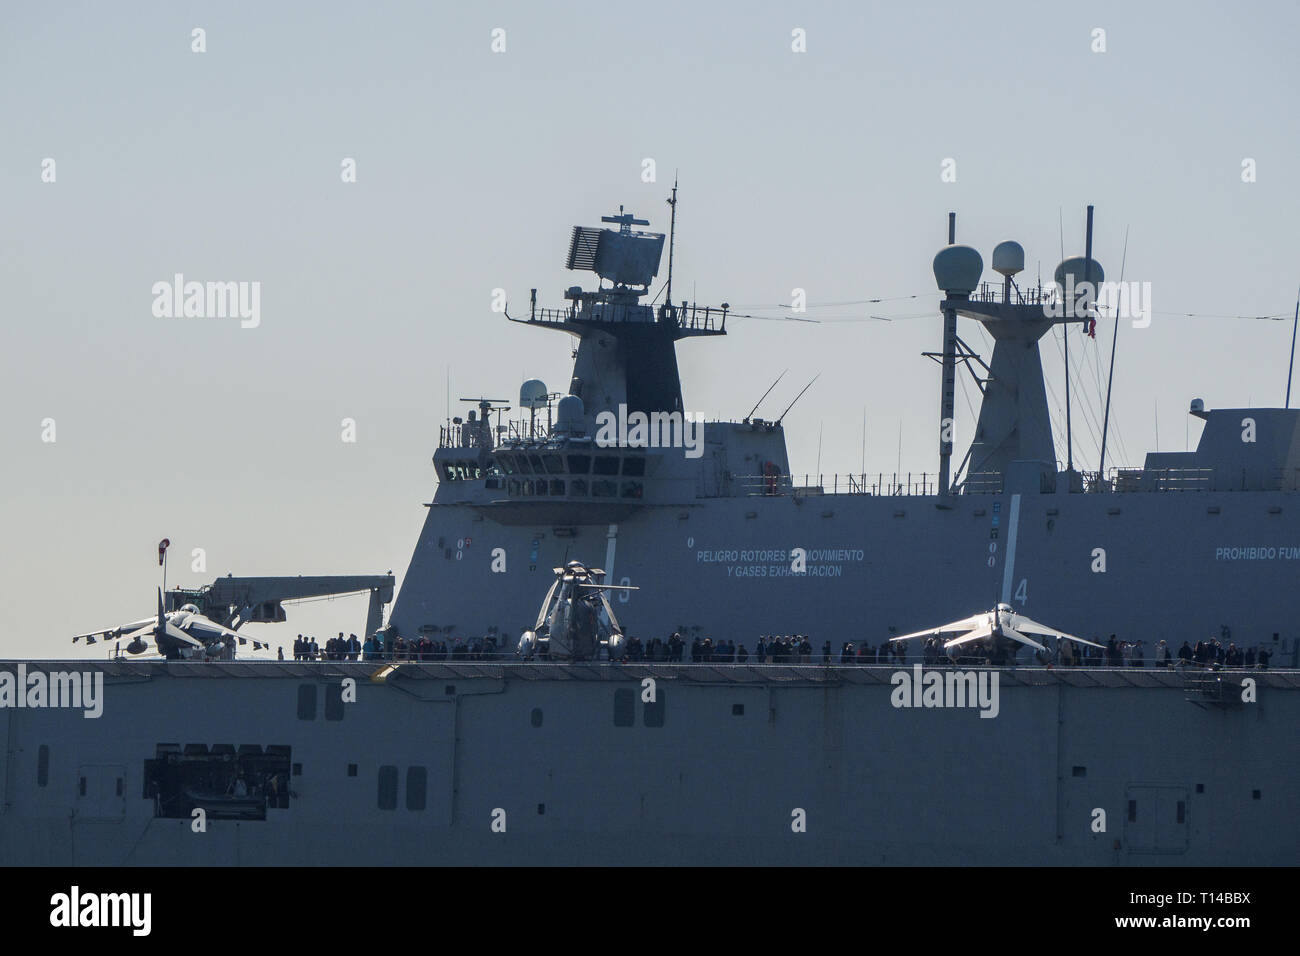 BILBAO, ESPAGNE - Mars / 23/2019. Le porte-avions de la marine espagnole Juan Carlos I dans le port de Bilbao, journée portes ouvertes pour visiter le navire. Journée ensoleillée Banque D'Images